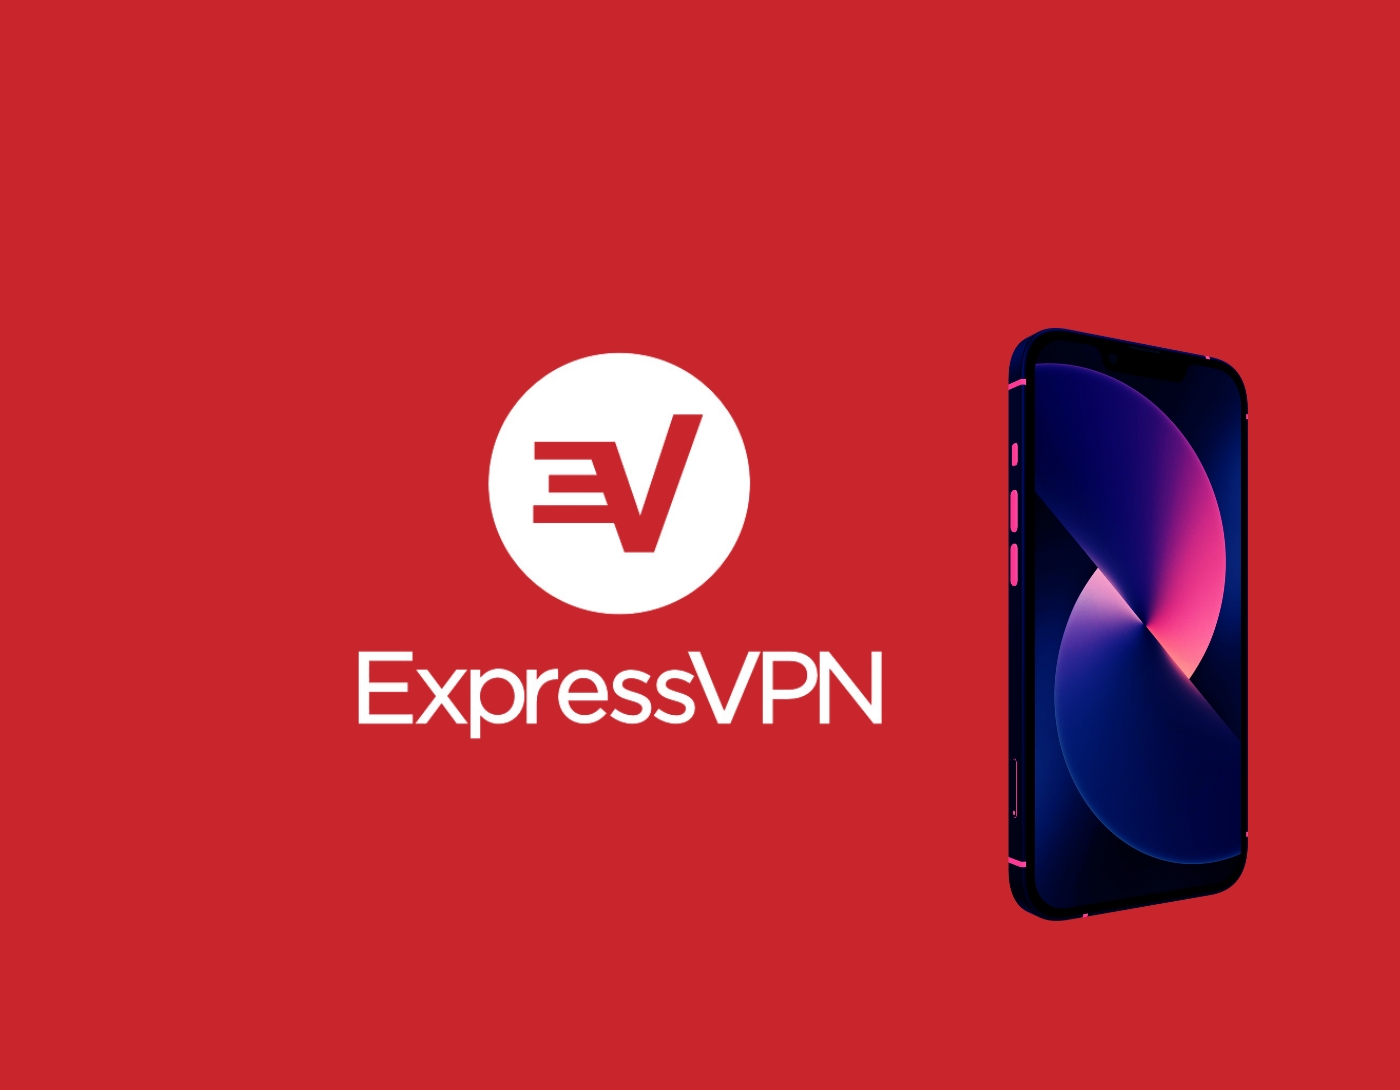 صورة واجهة برنامج Express VPN،أفضل VPN لأجهزة آيفون وآيباد